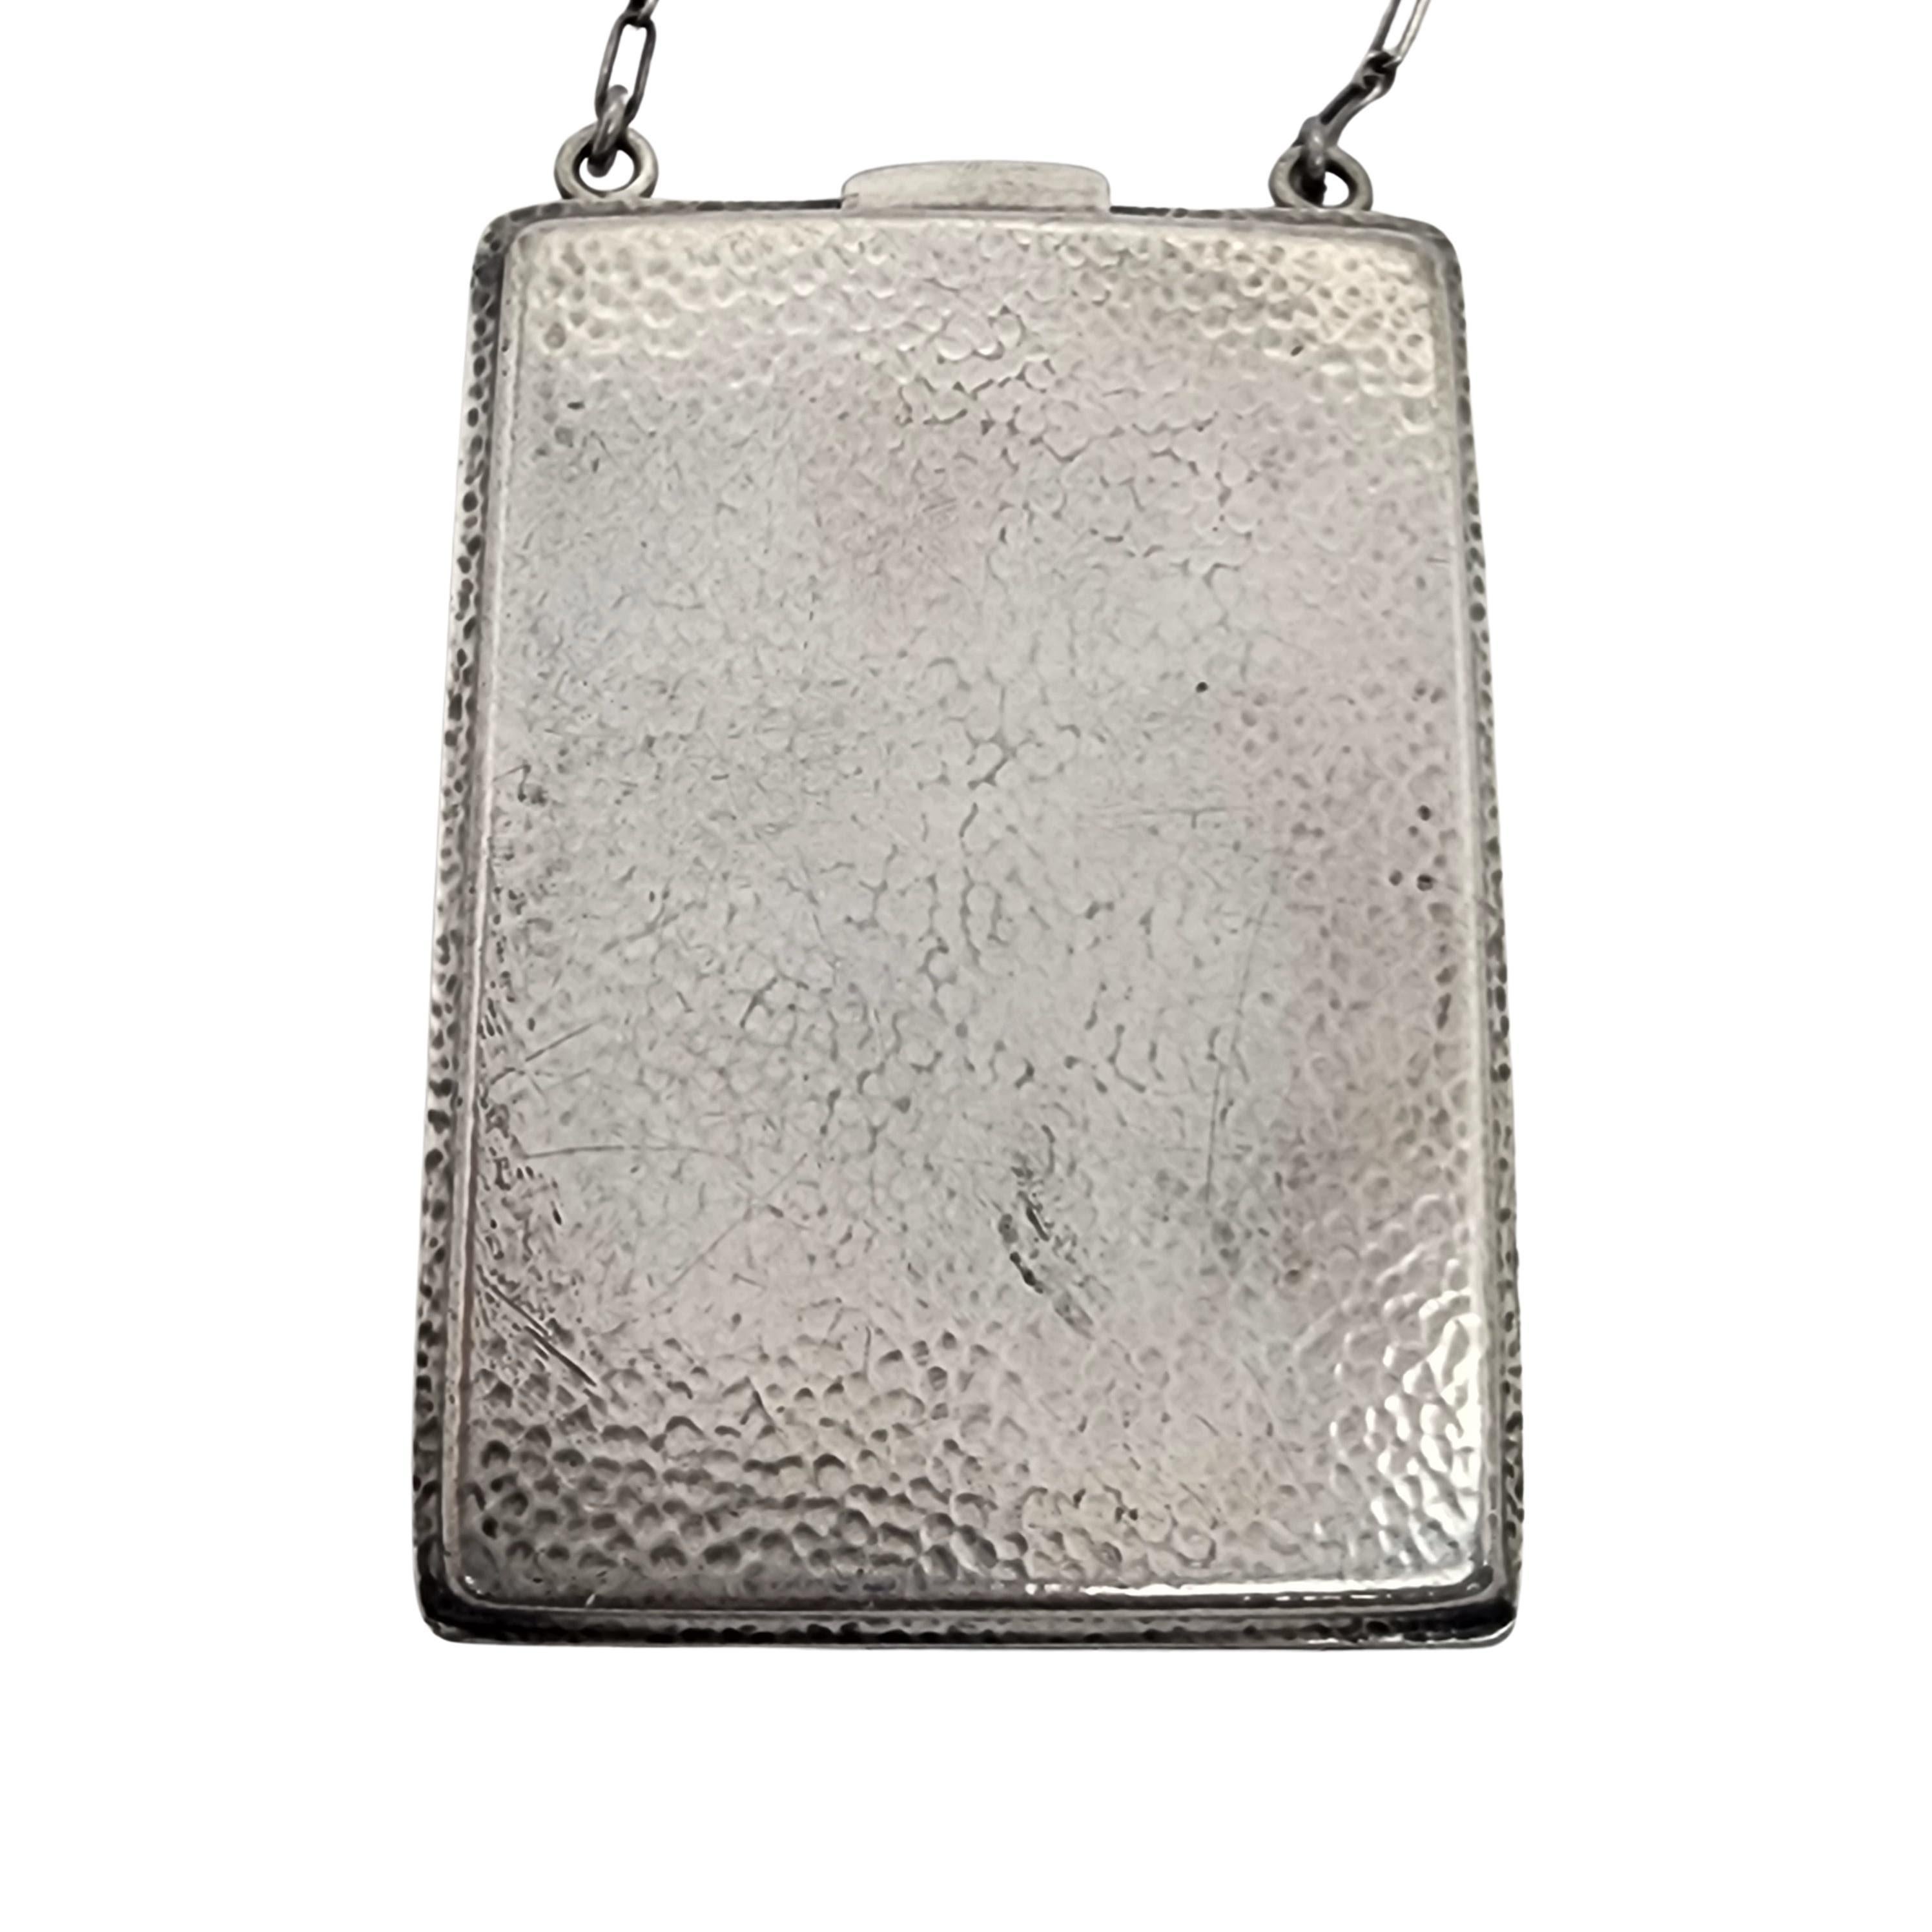 silver coin purse antique